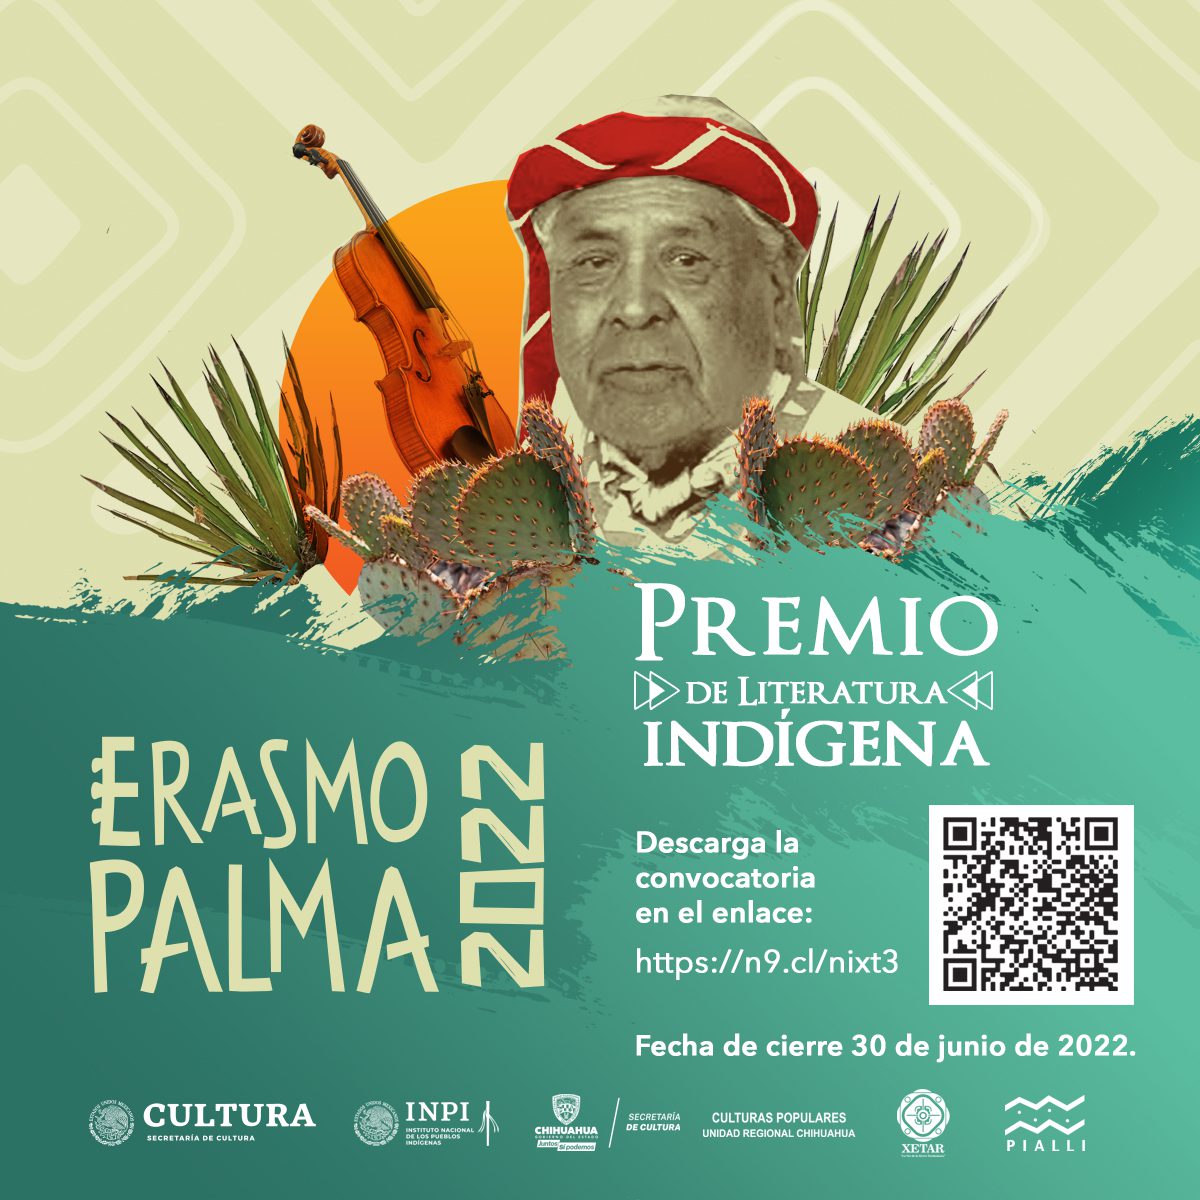 Lanzan la convocatoria Premio de Literatura Indígena Erasmo Palma 2022